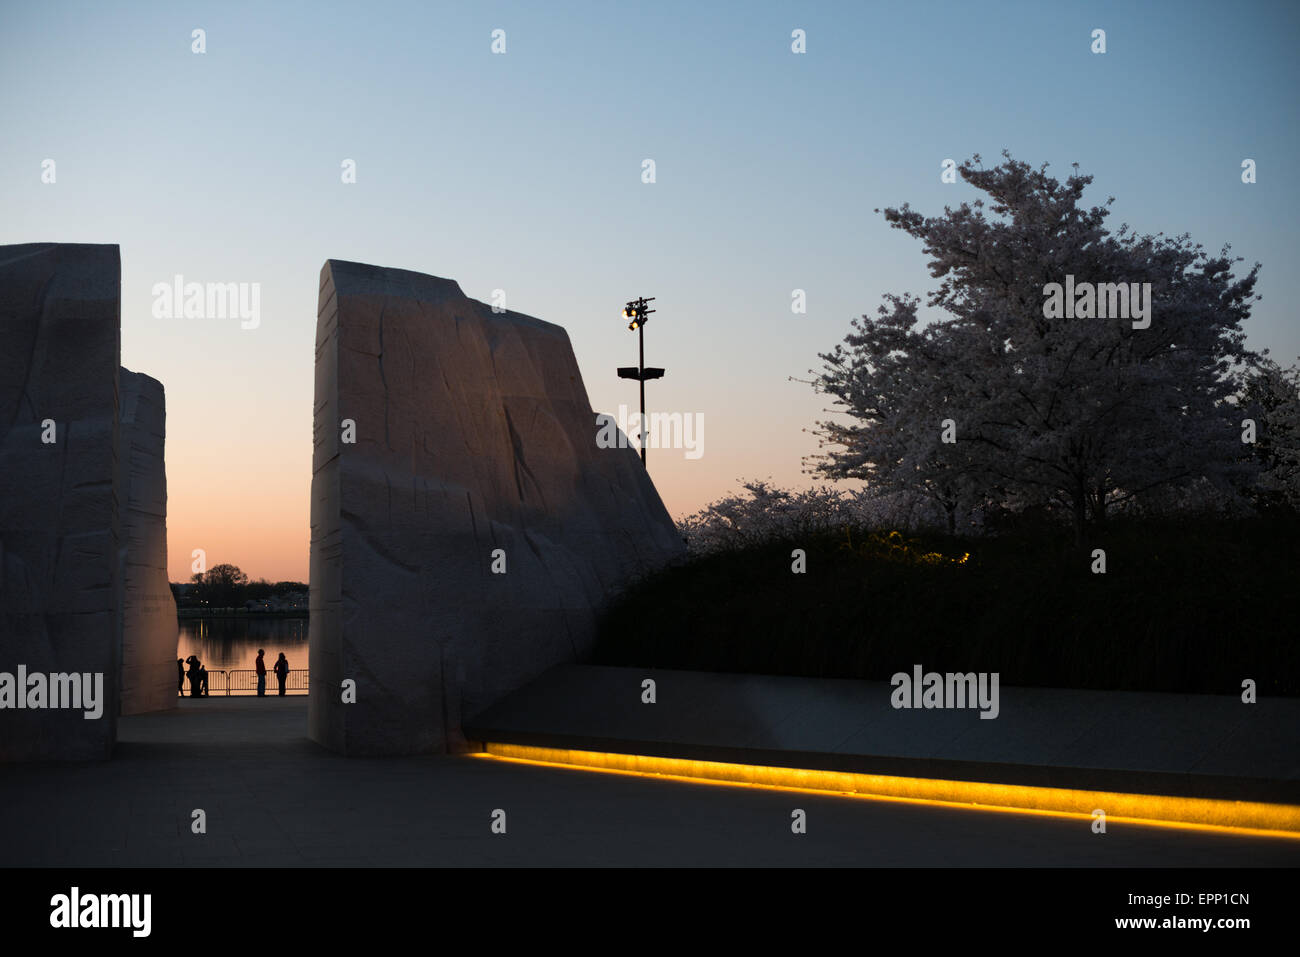 WASHINGTON DC, Etats-Unis - une vue sur le mémorial Martin Luther King avant l'aube, à la recherche, à travers la montagne d'espoir vers l'eau du bassin de marée dans la distance. Ouvert en 2011, le Martin Luther King Jr Memorial se trouve sur les rives de la Tidal Basin à Washington DC et commémore la civil rights leader. Banque D'Images